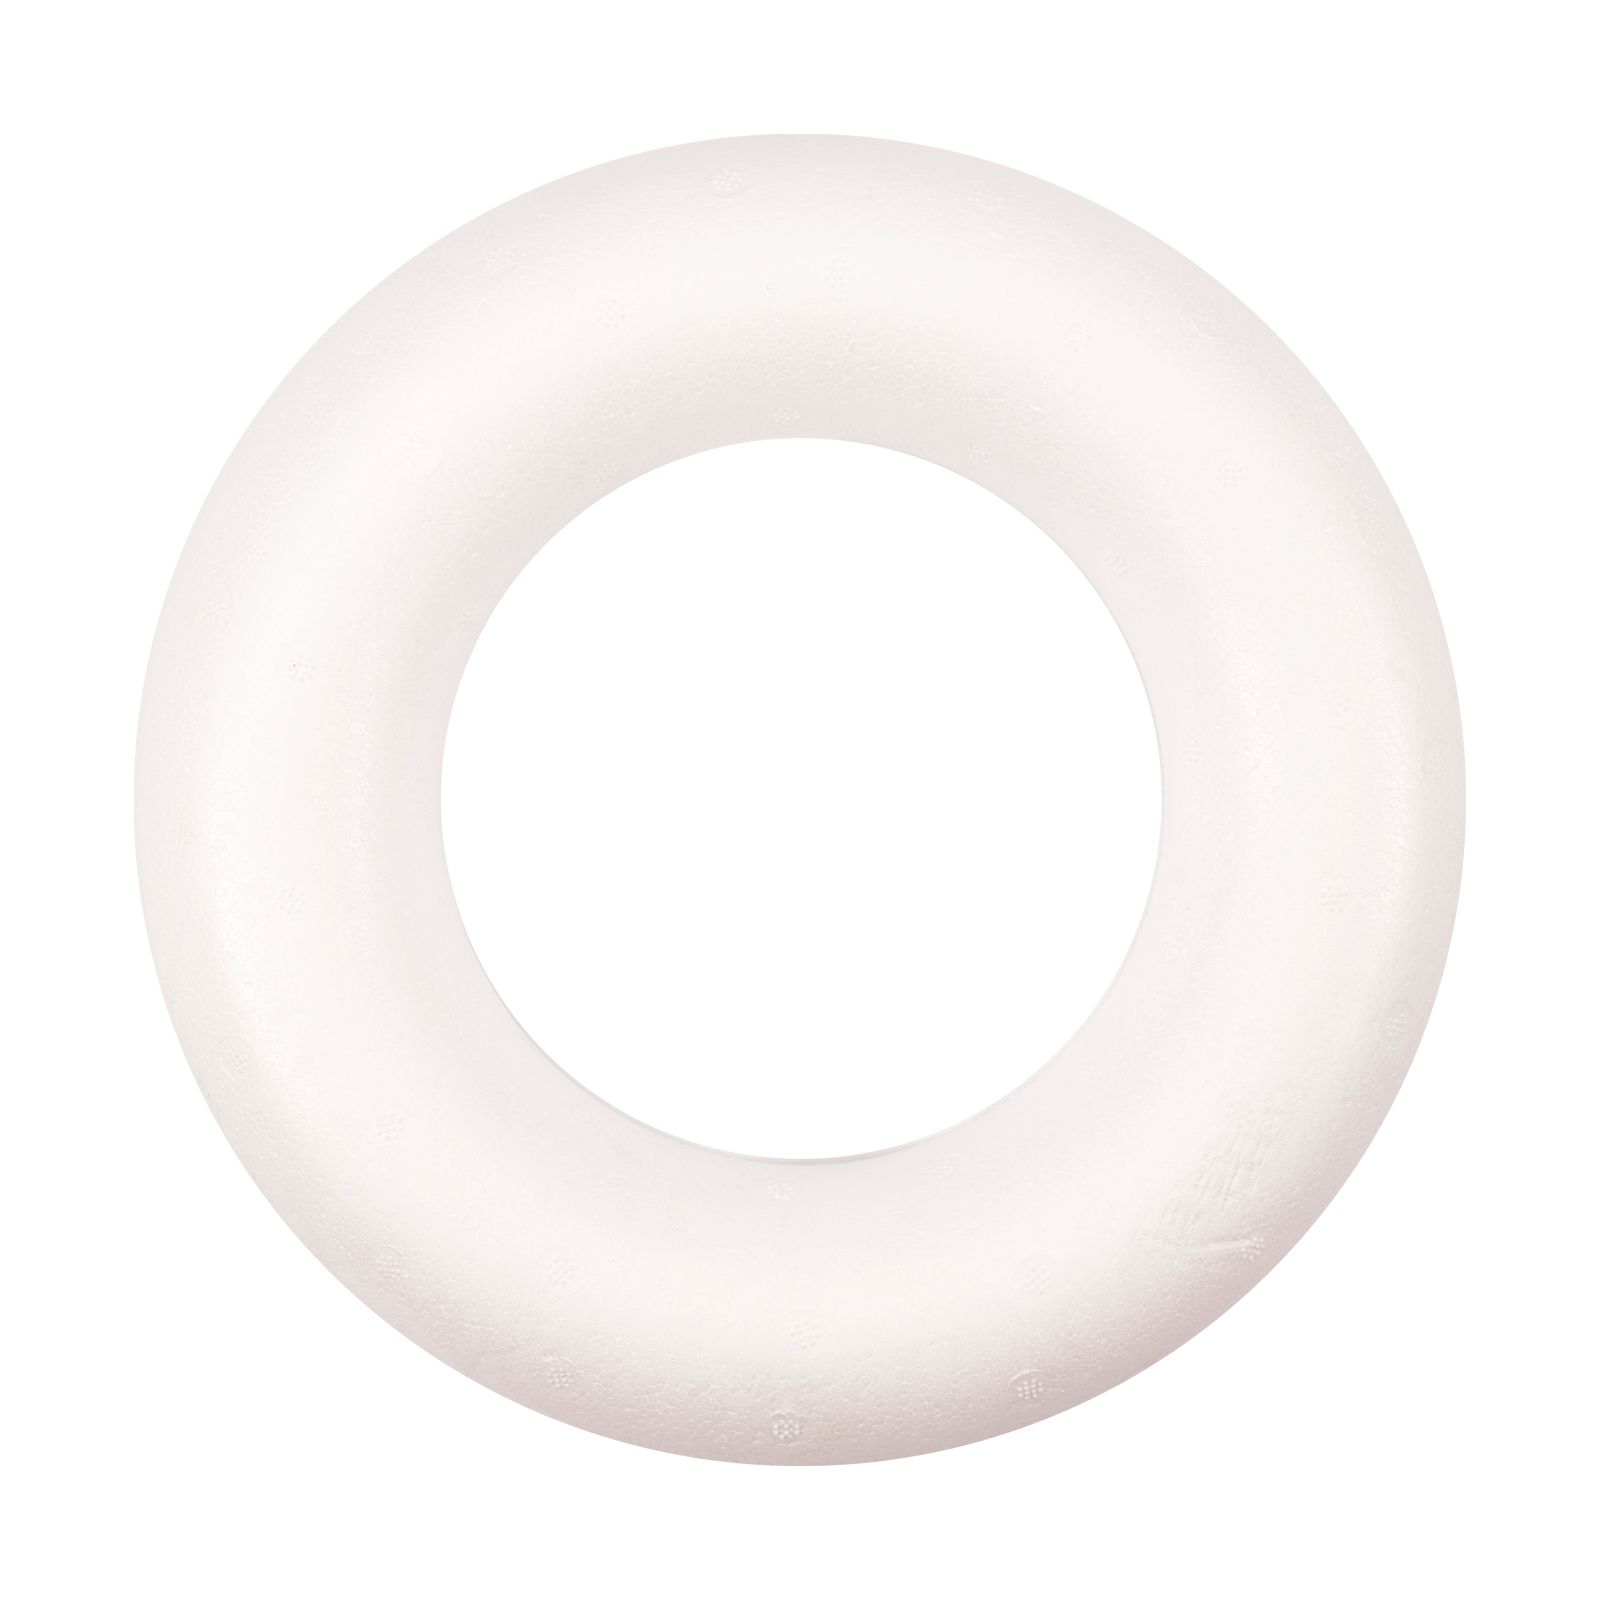 Vaessen Creative • Demi-anneau polystyrène Ø22cm